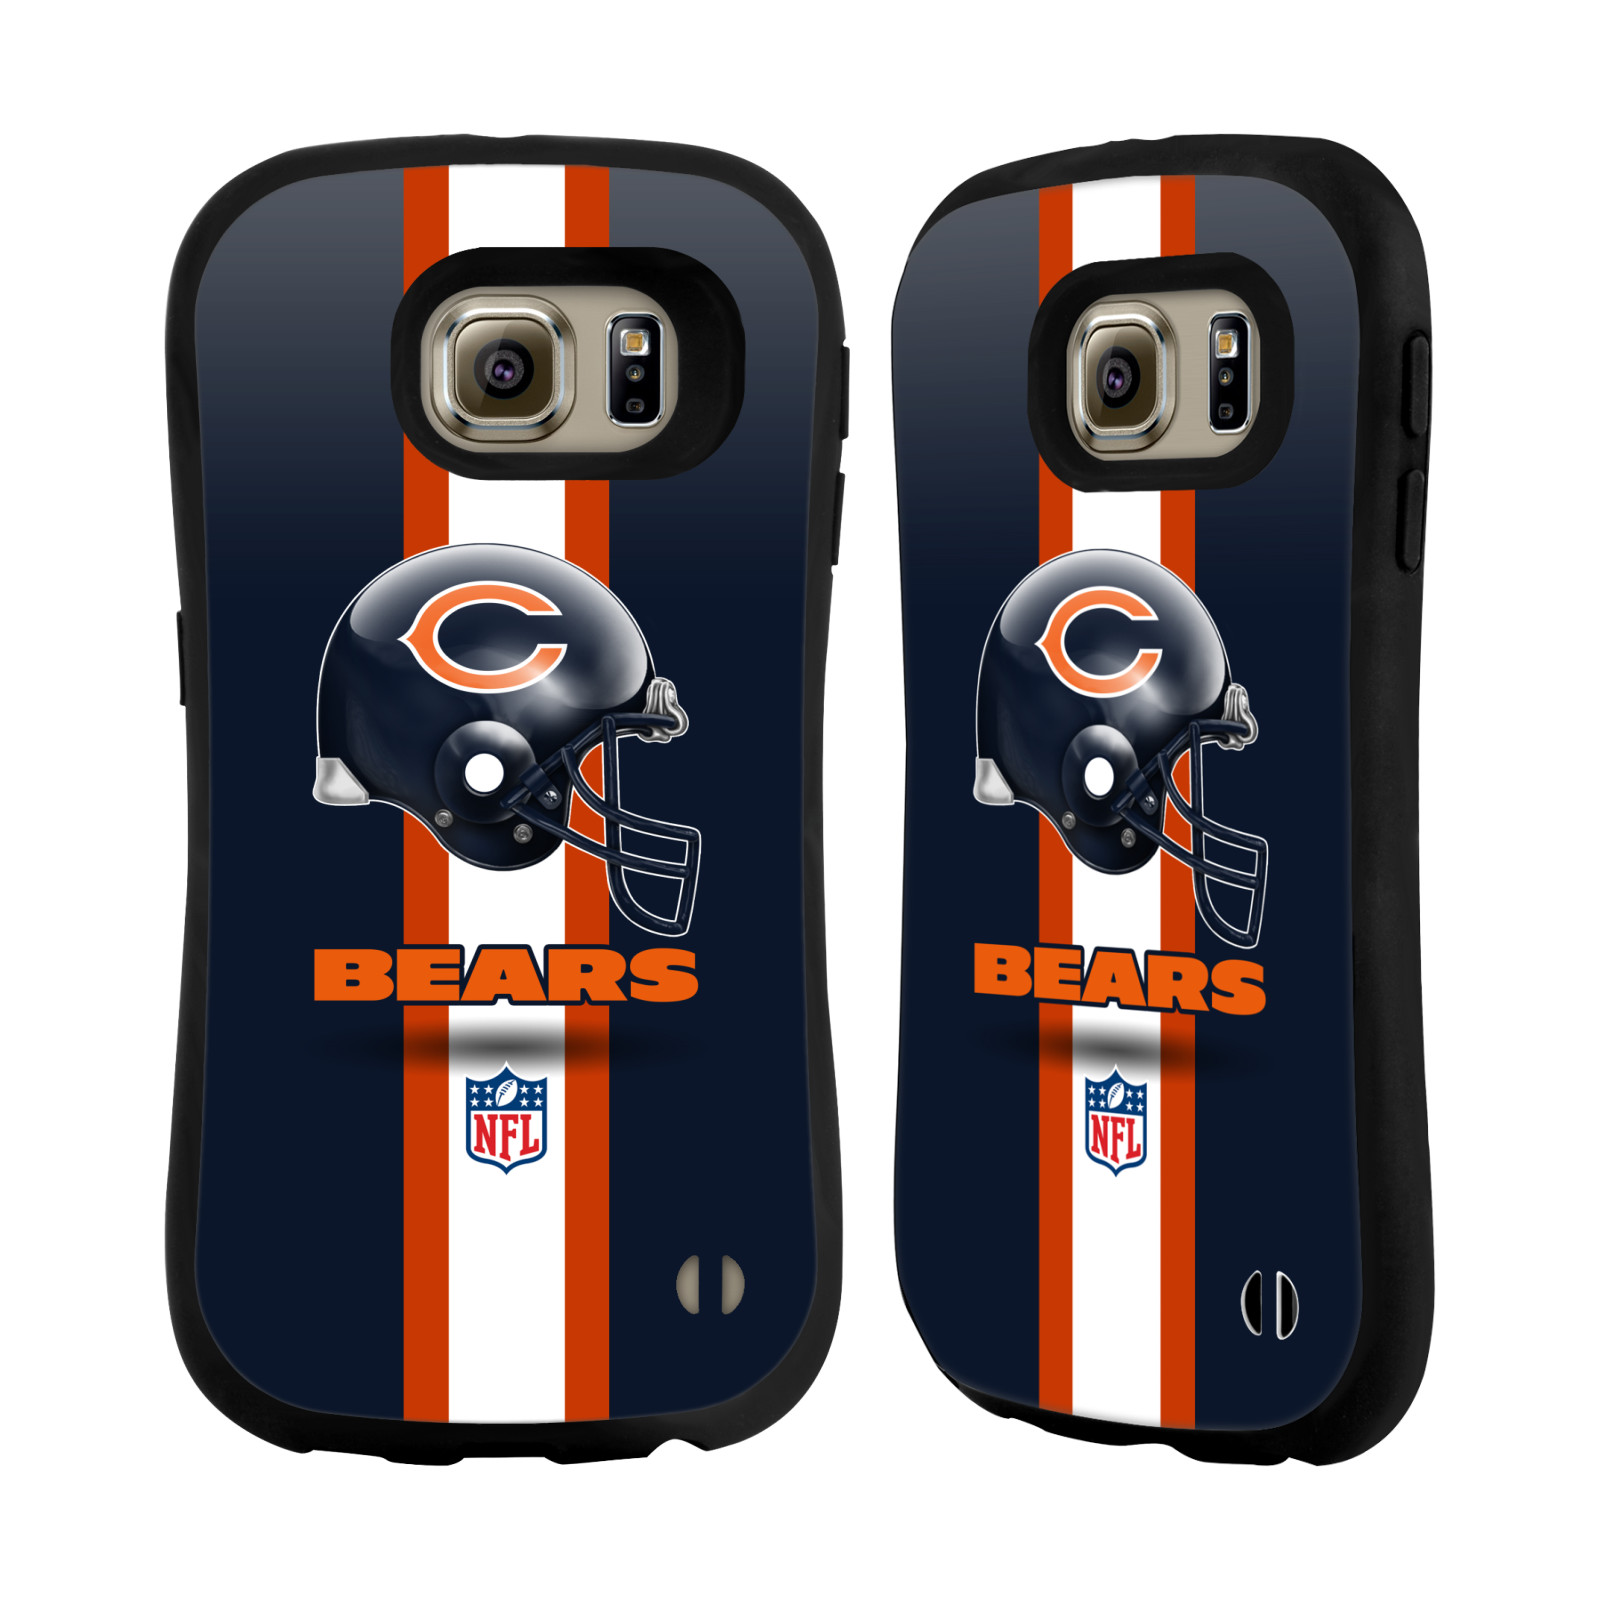 OFFICIAL NFL CHICAGO BEARS LOGO HYBRID CASE FOR SAMSUNG PHONES | eBay